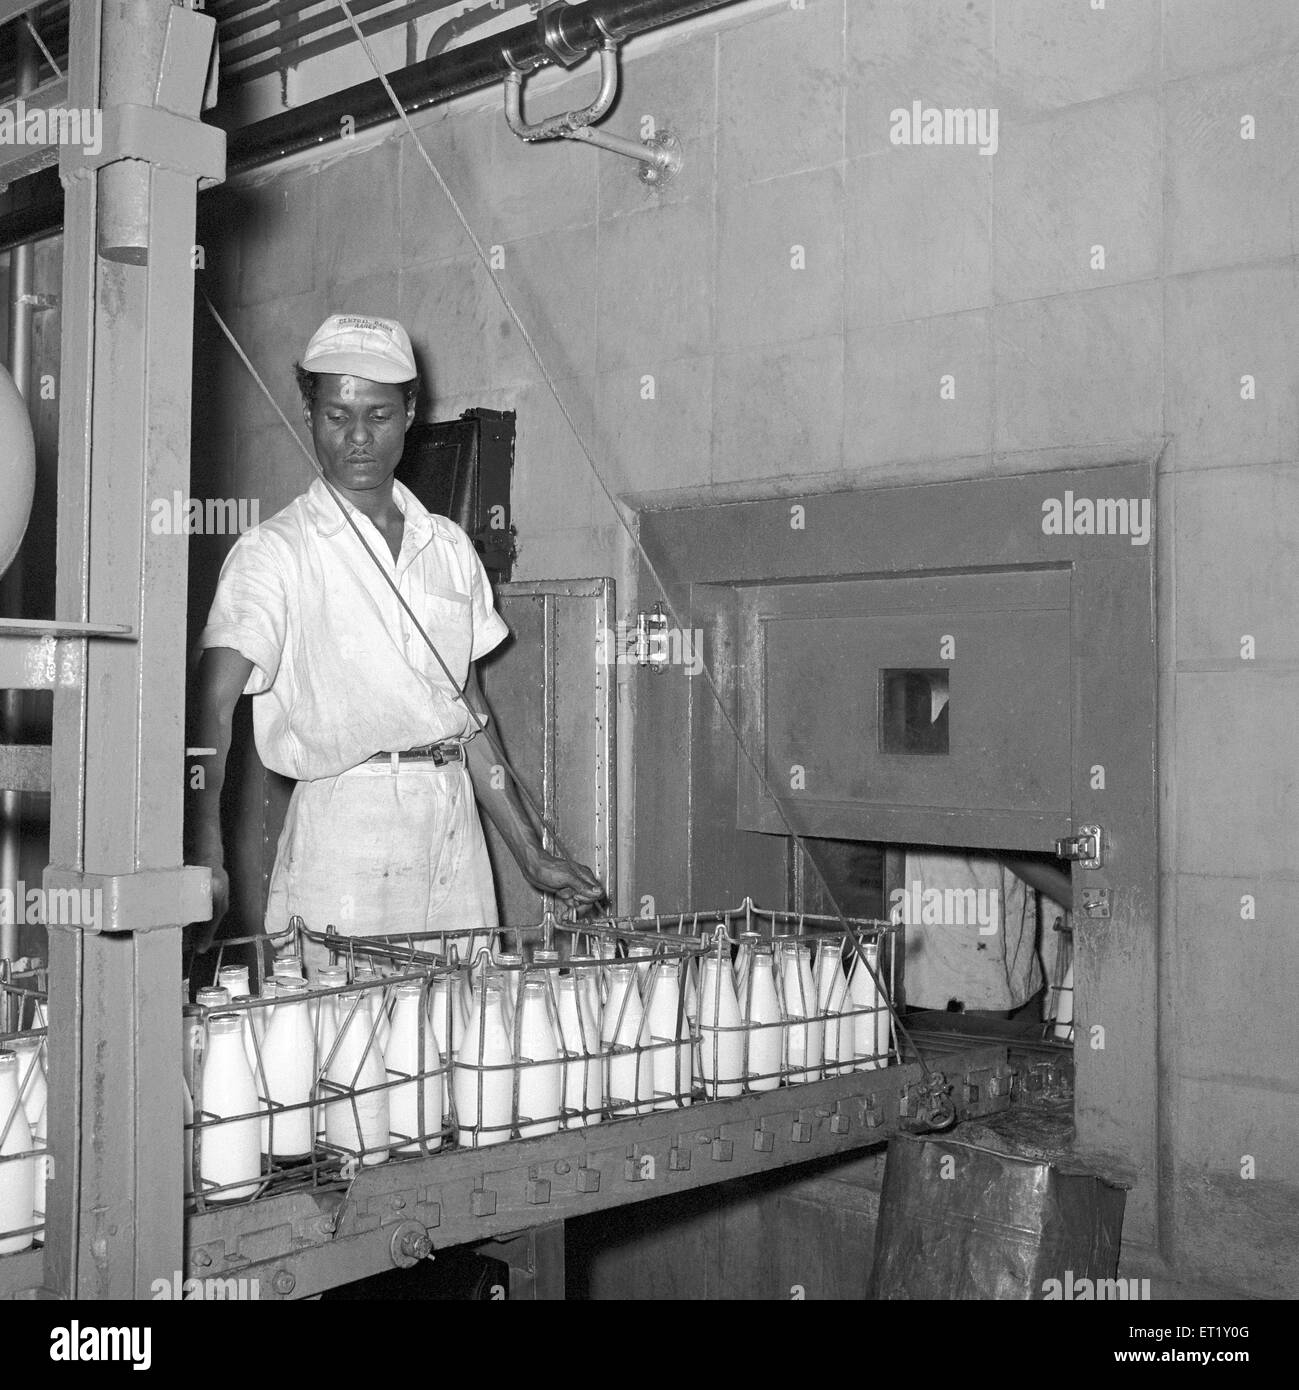 Bouteilles de lait se préparer à l'expédition ; usine de lait ; Aarey ; Bombay maintenant Mumbai ; Maharashtra ; Inde ; Asie ; ancien millésime 1900 Banque D'Images